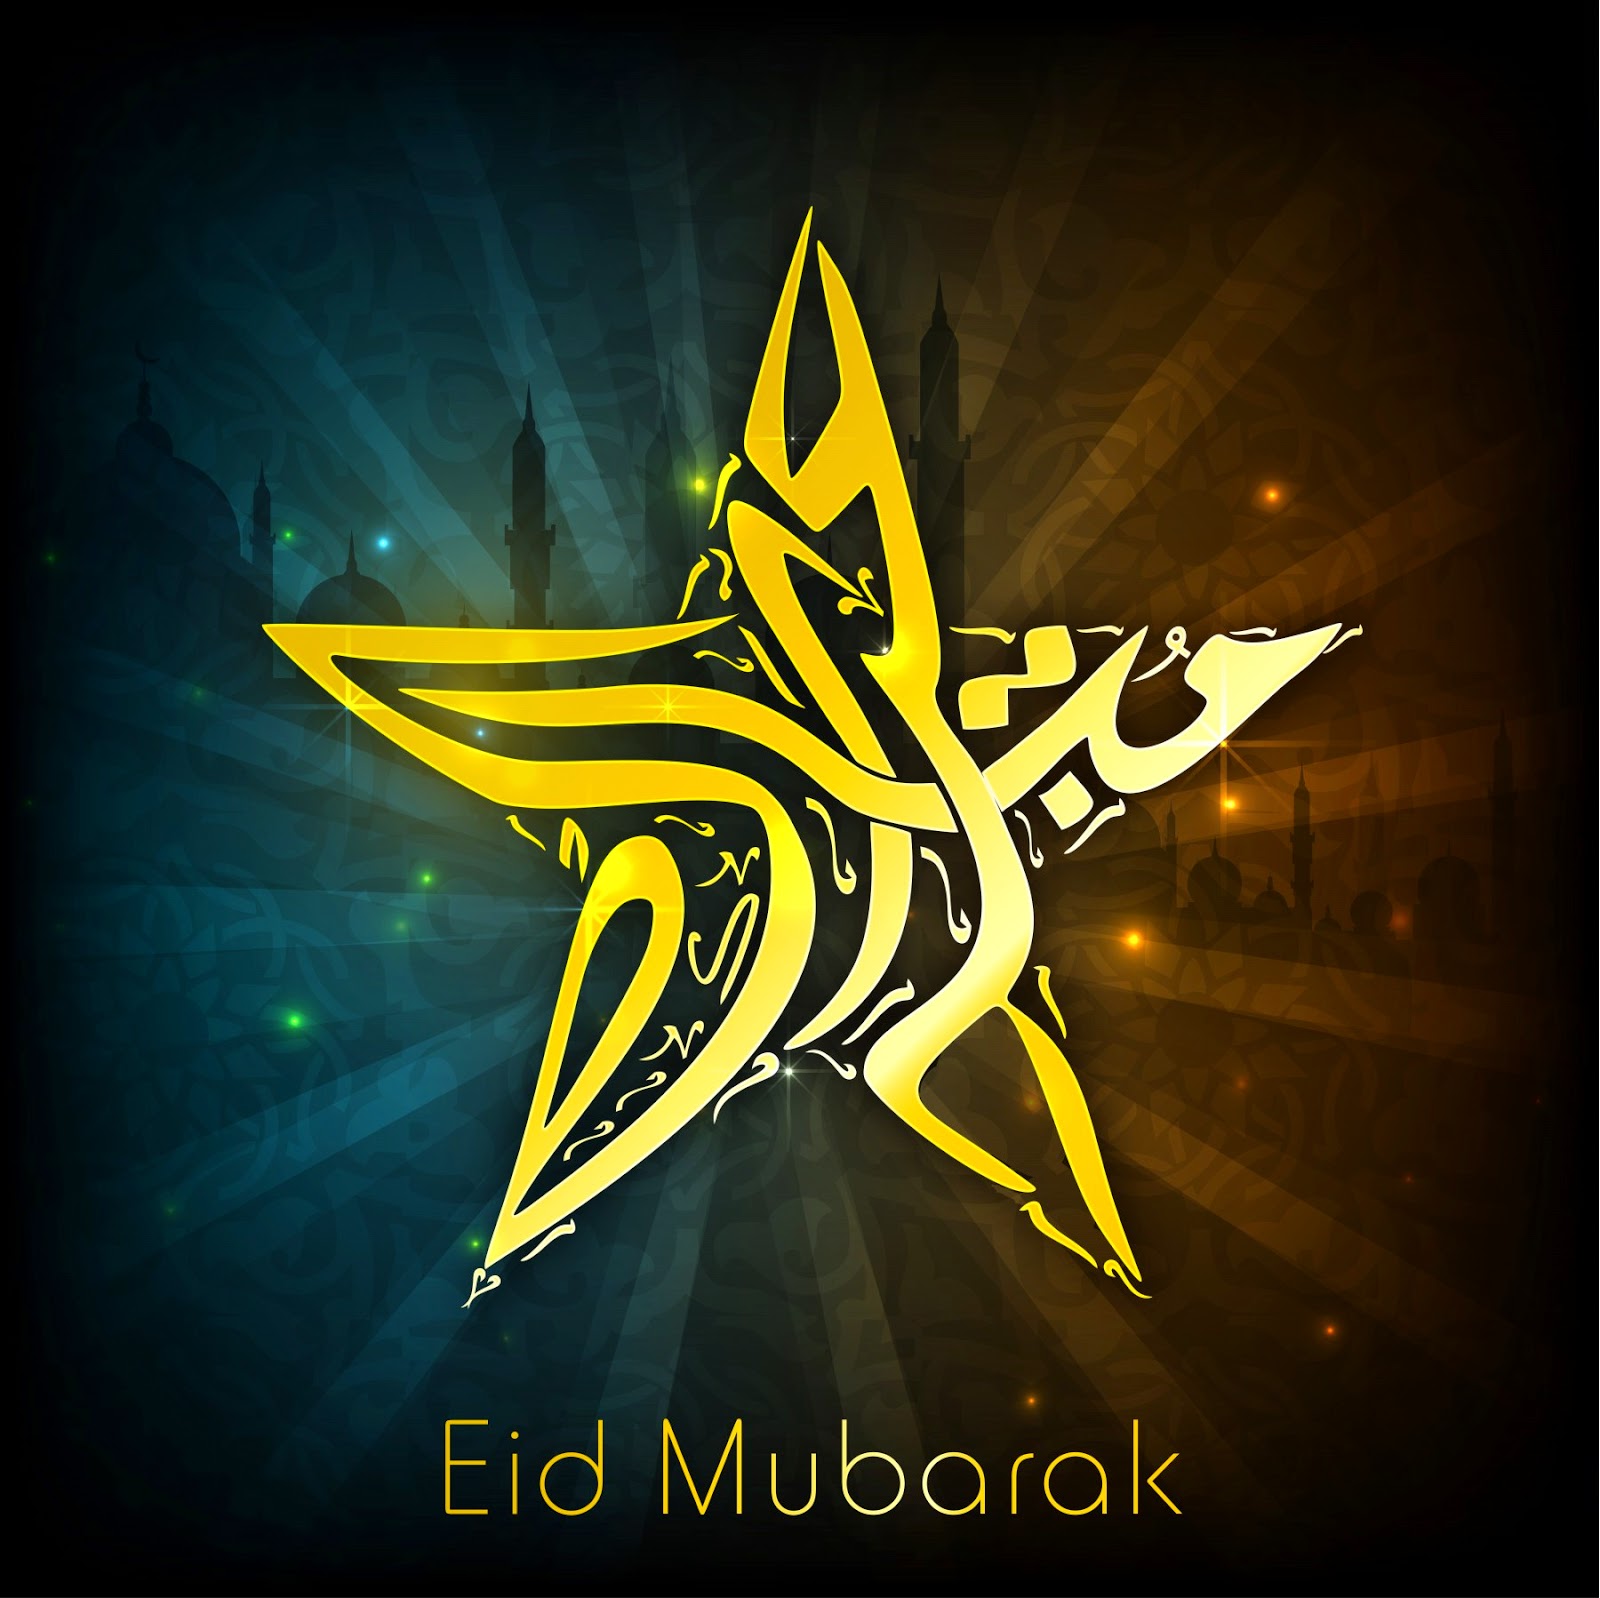 Best 20 Eid Cards for Eid ul-Adha 2014  Eid Mubarak 